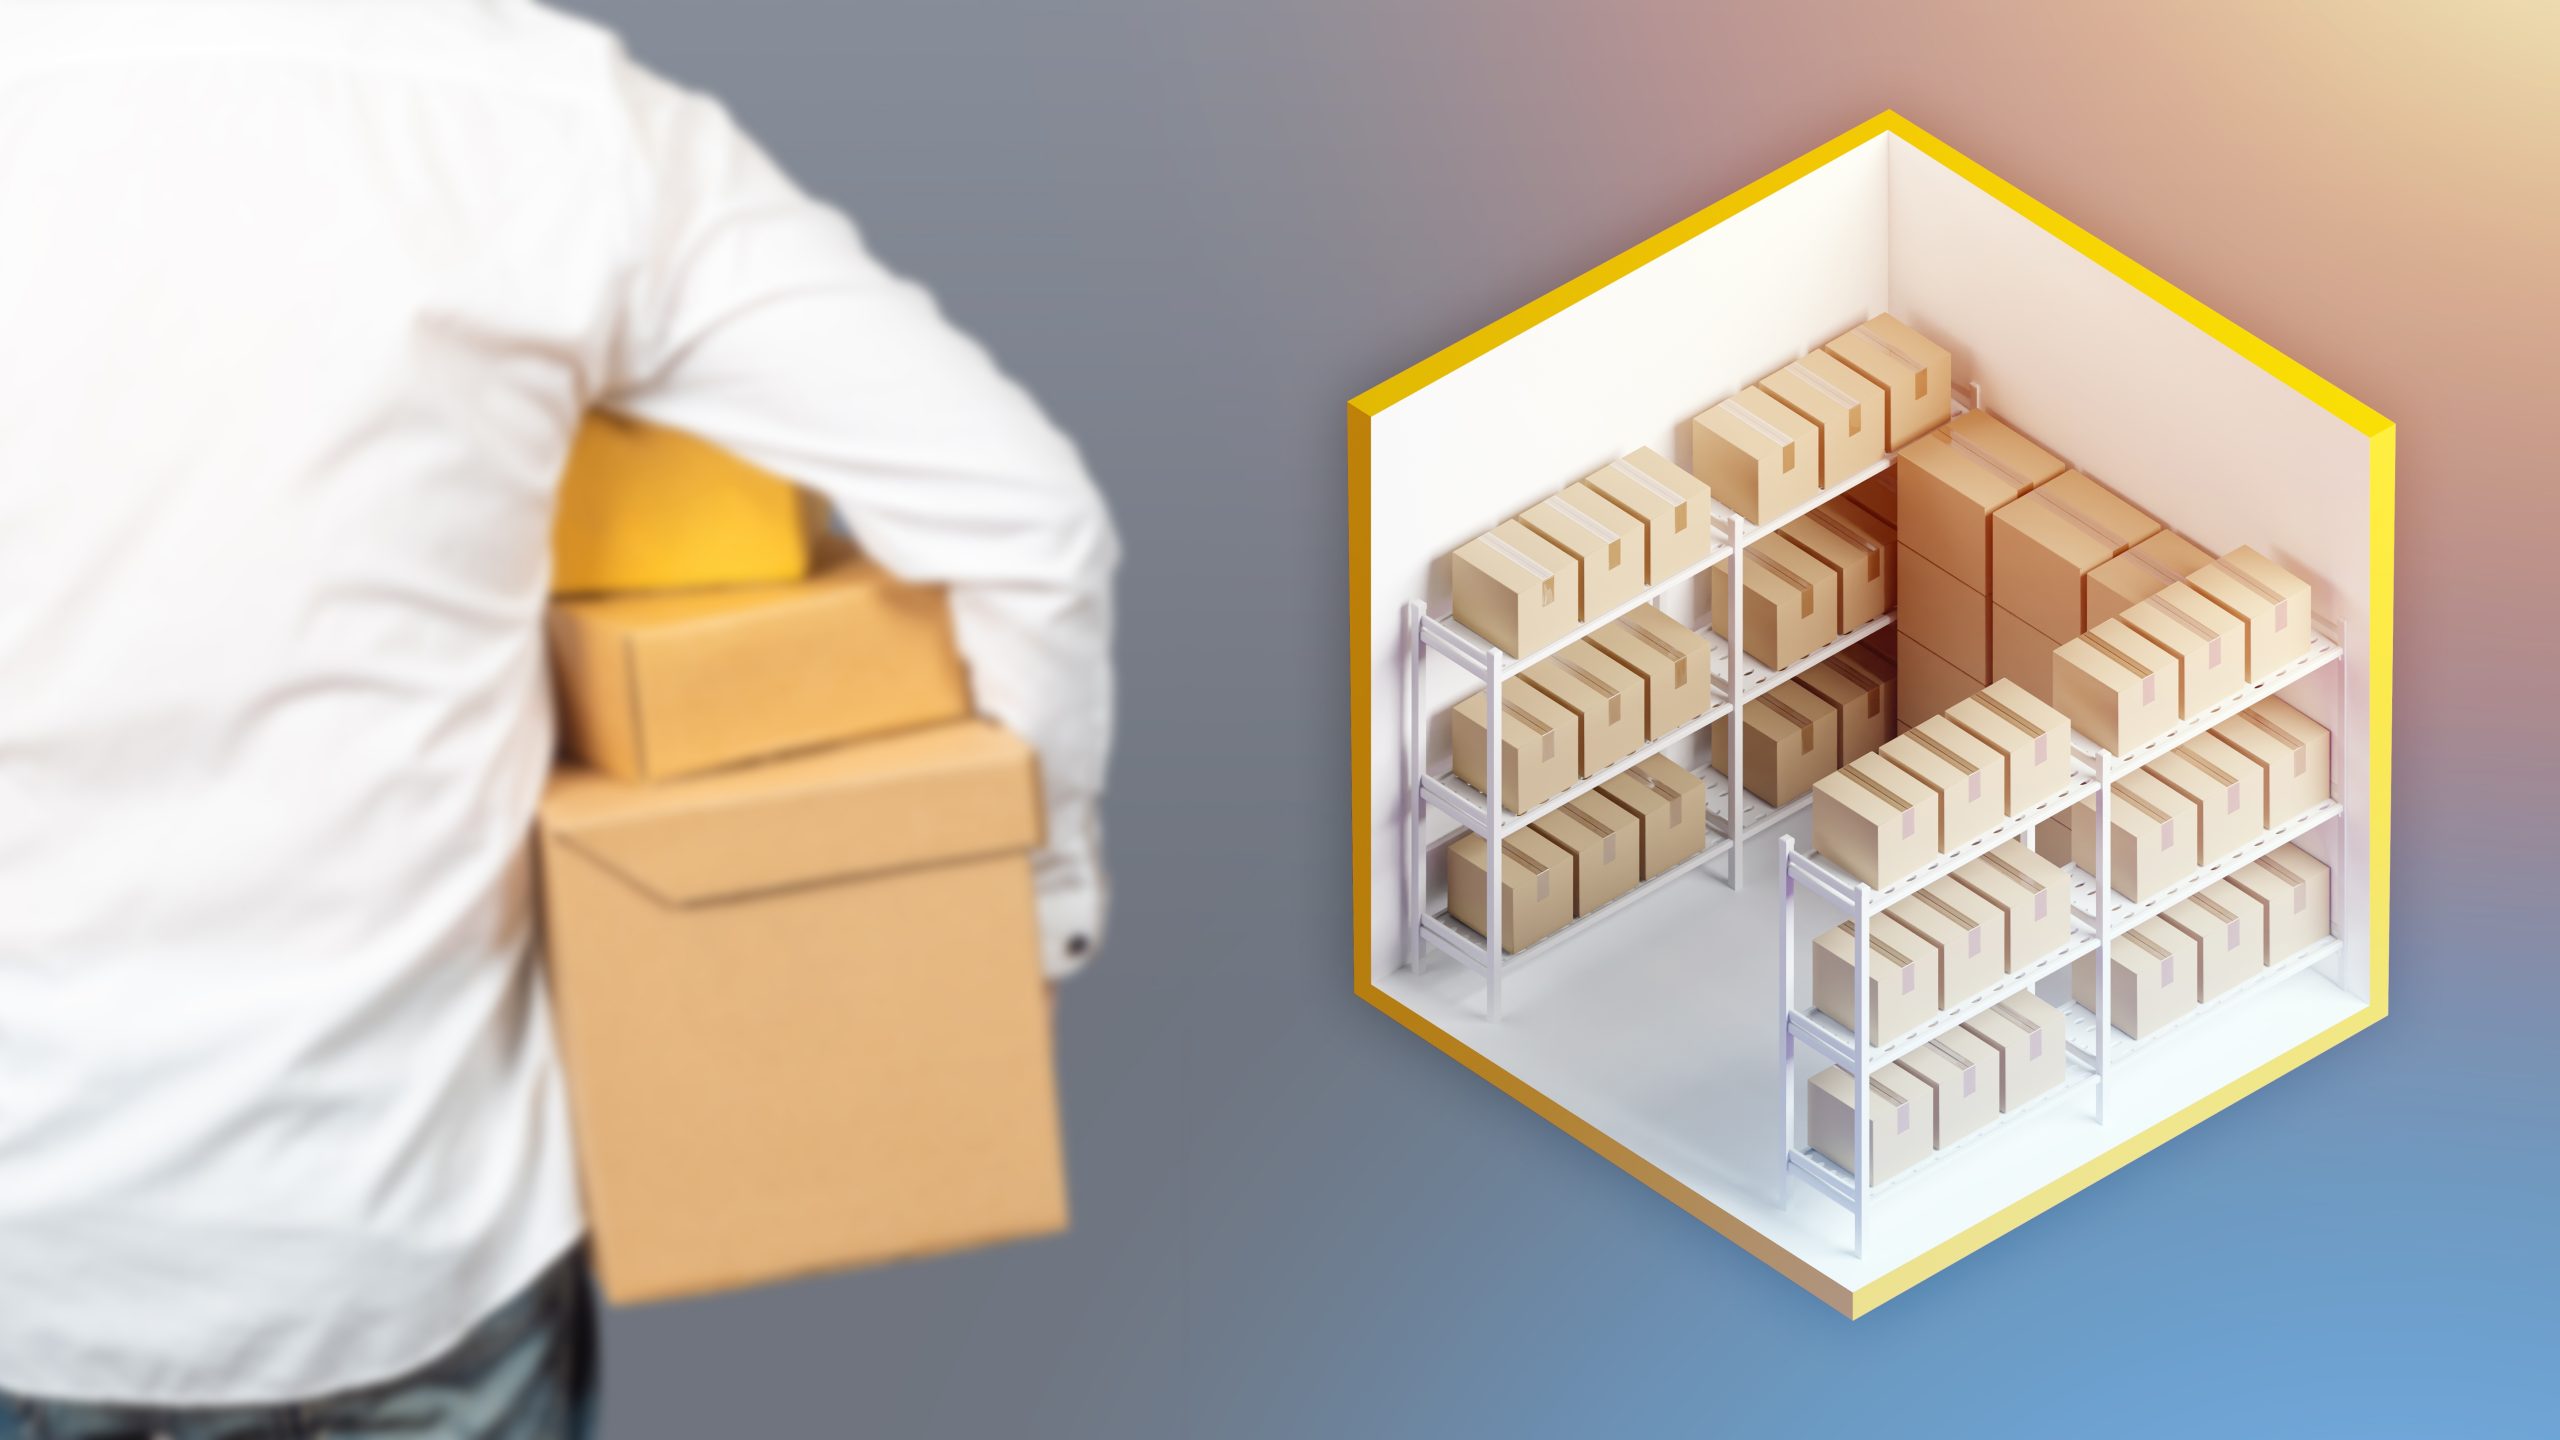 How to Organize a Storage Unit, Self Storage